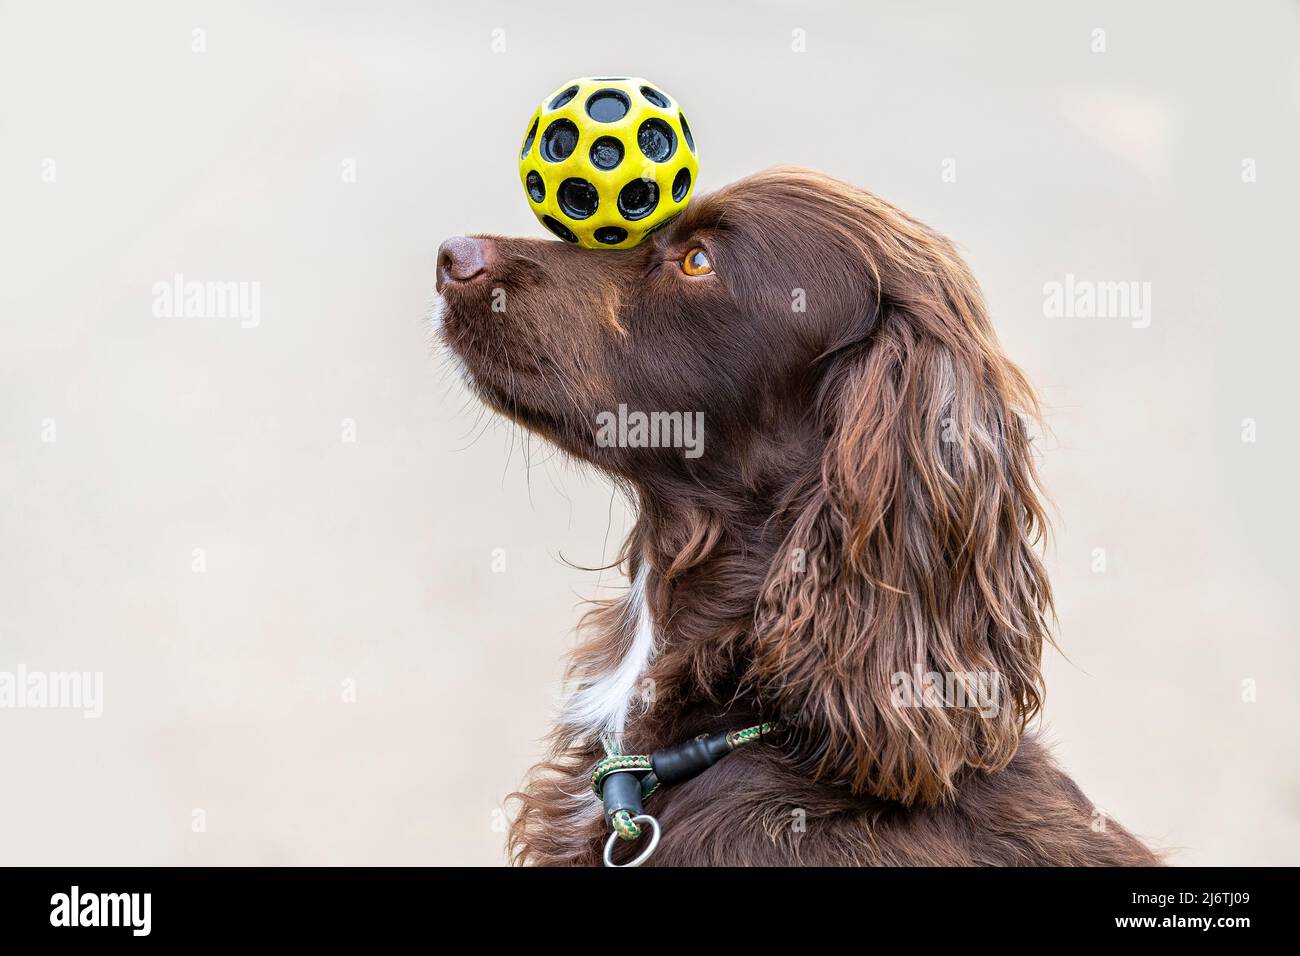 Cocker Spaniel balancing a yellow ball on his nose. Stock Photo